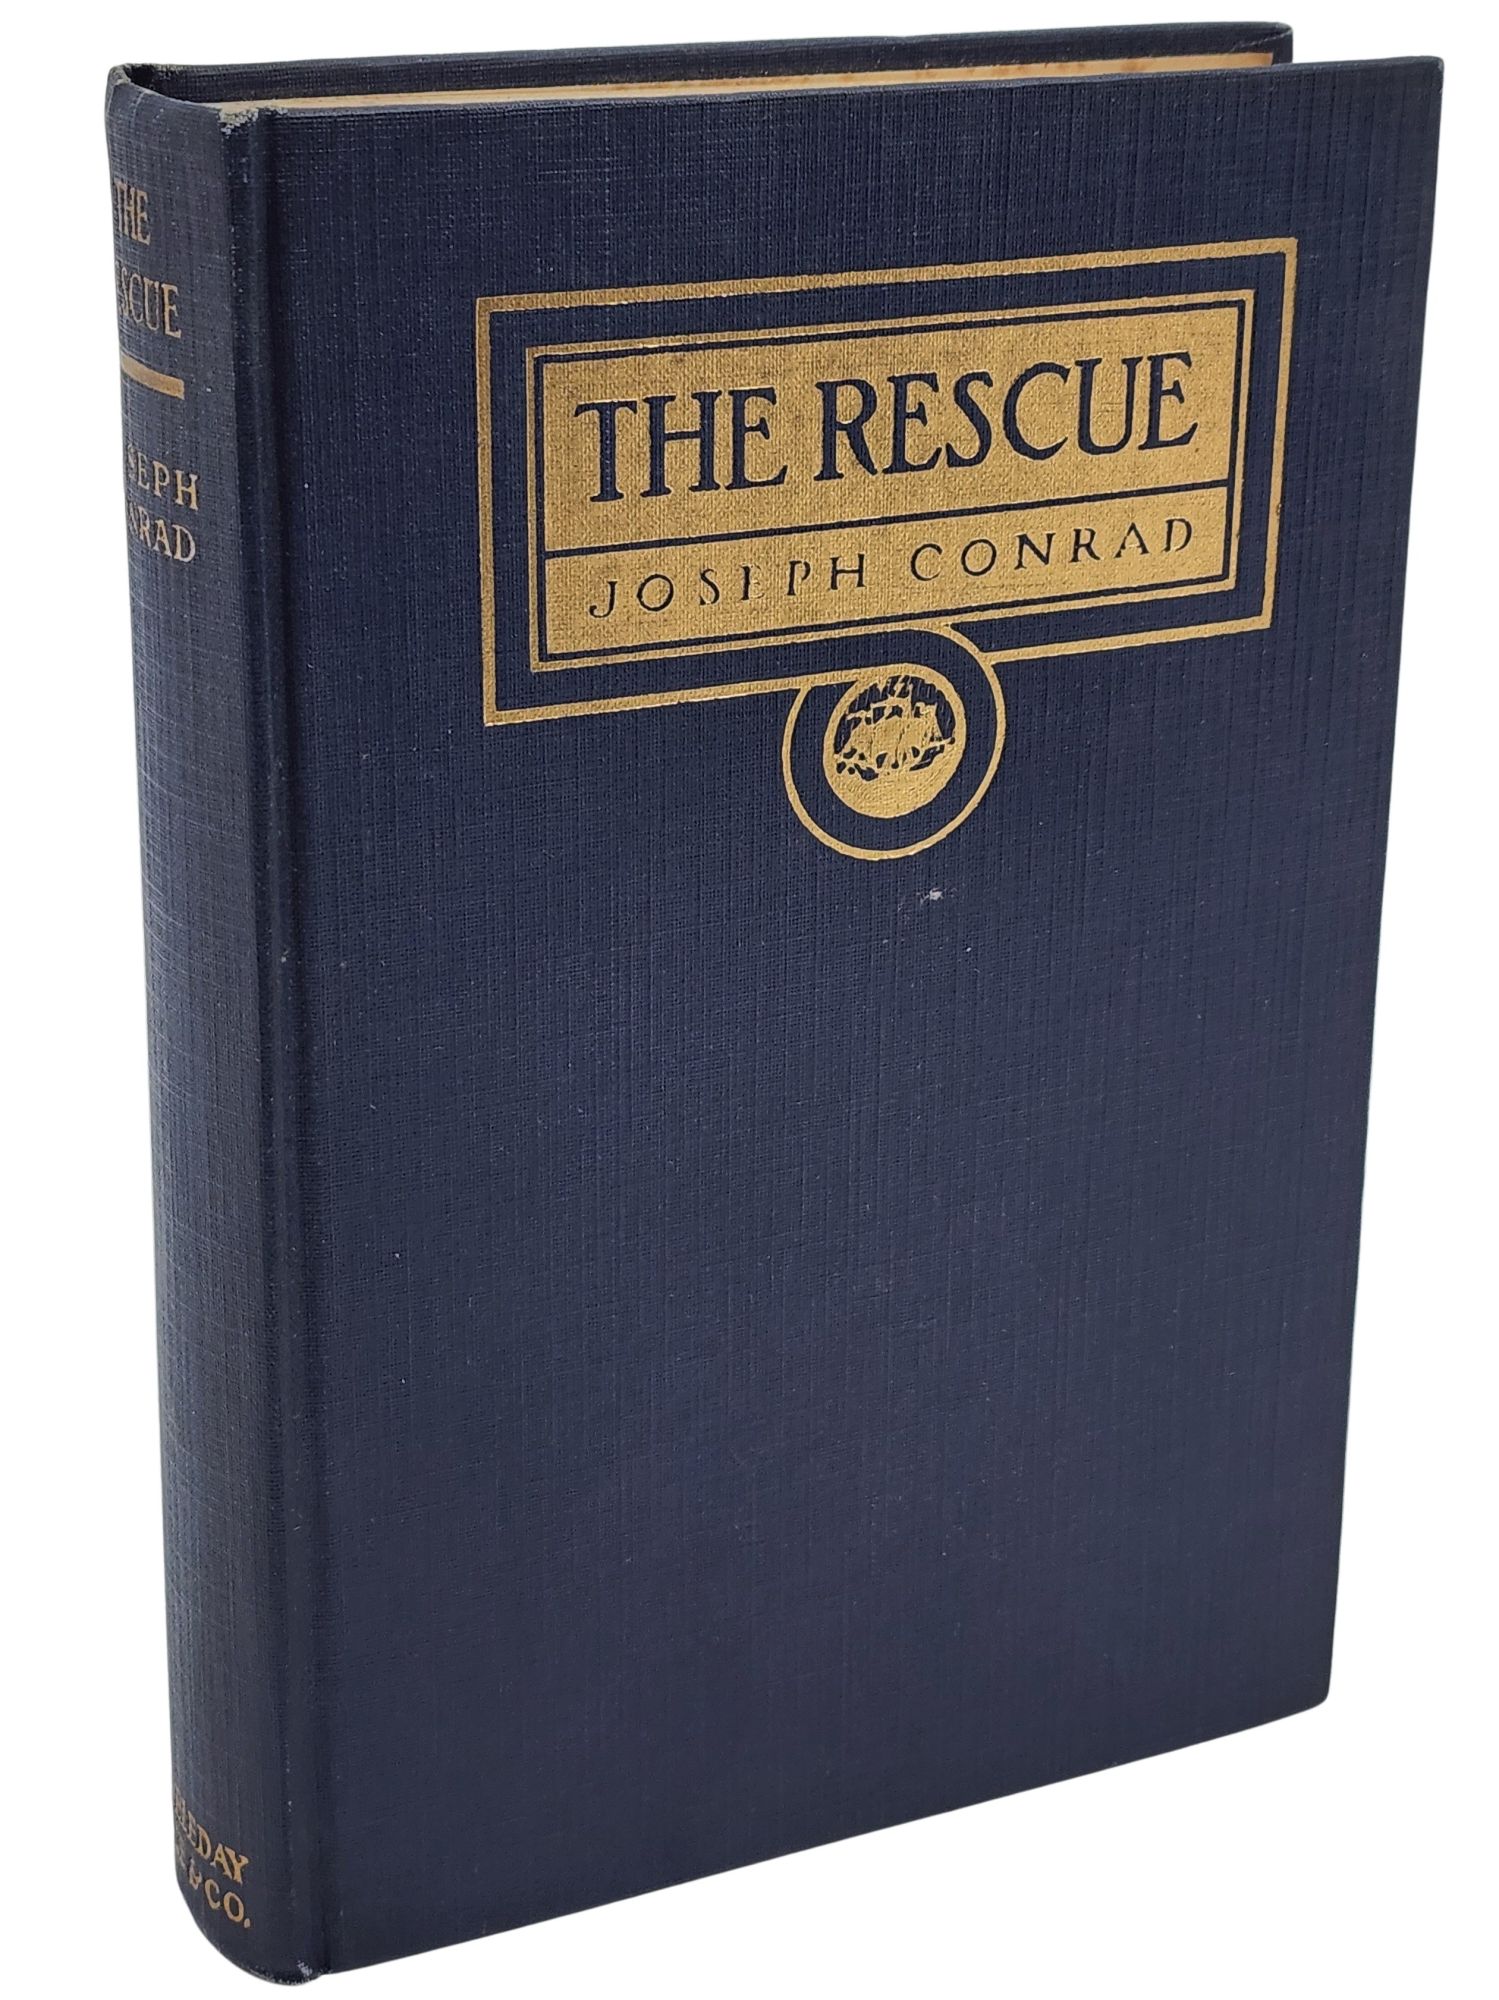 [Book #50759] THE RESCUE. Joseph Conrad.